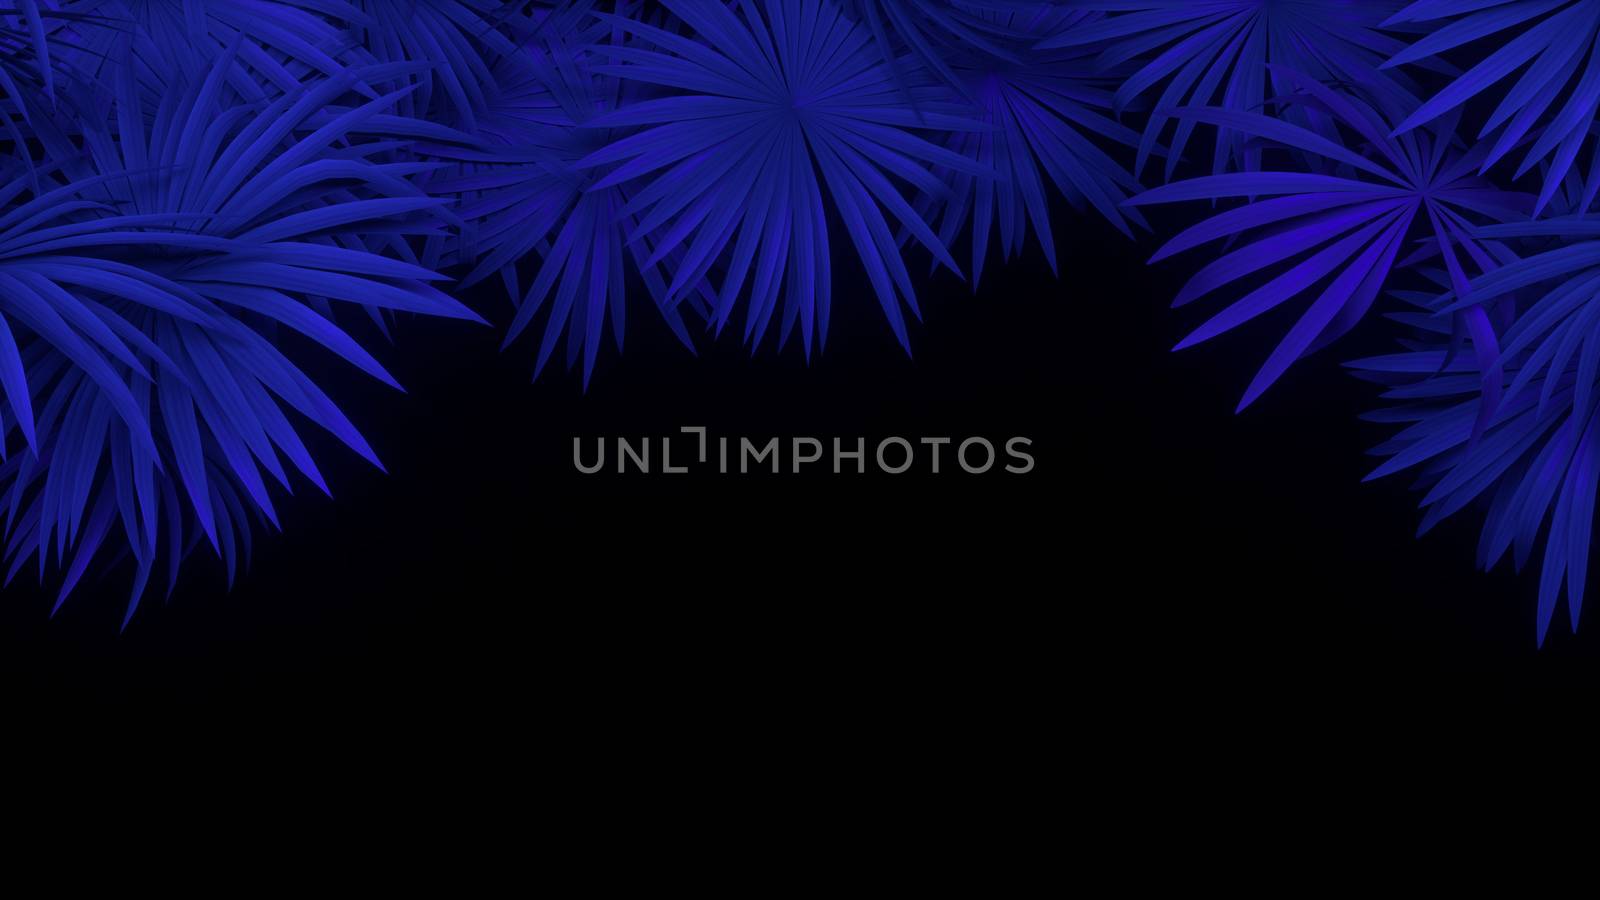 3d render of neon palm leaves on black background. Banner design. Retrowave, synthwave, vaporwave illustration. by Shanvood